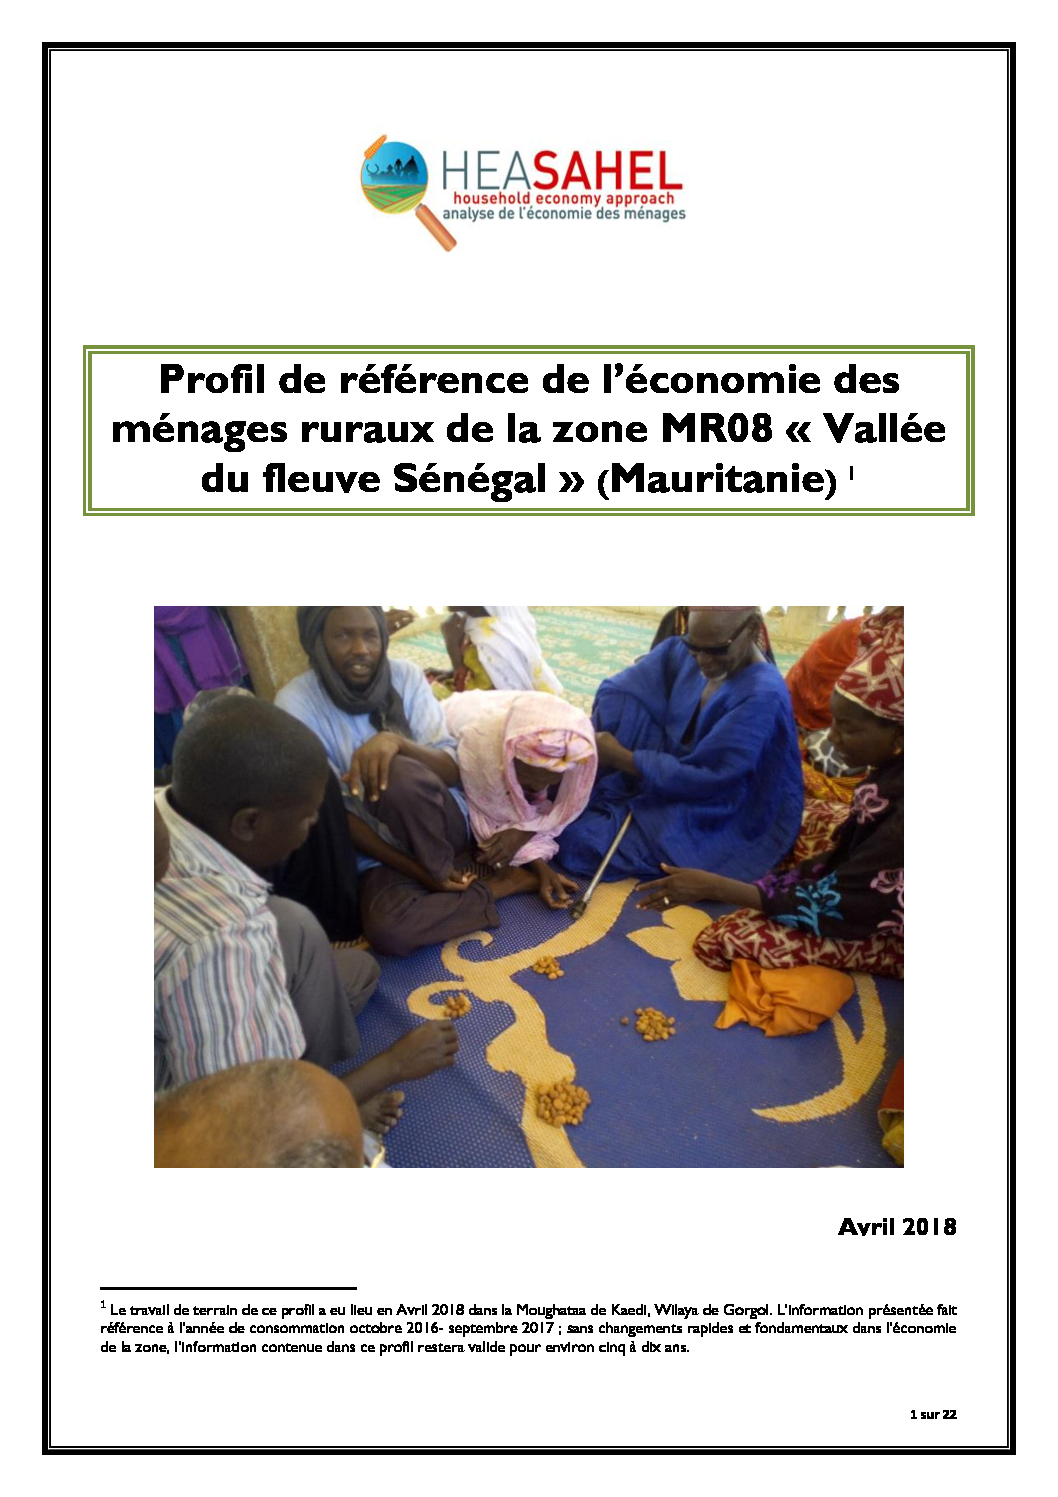 Profil Mauritanie - MR08 - Moughataa de Kaedi, Wilaya de Gorgol  - Avril 2018